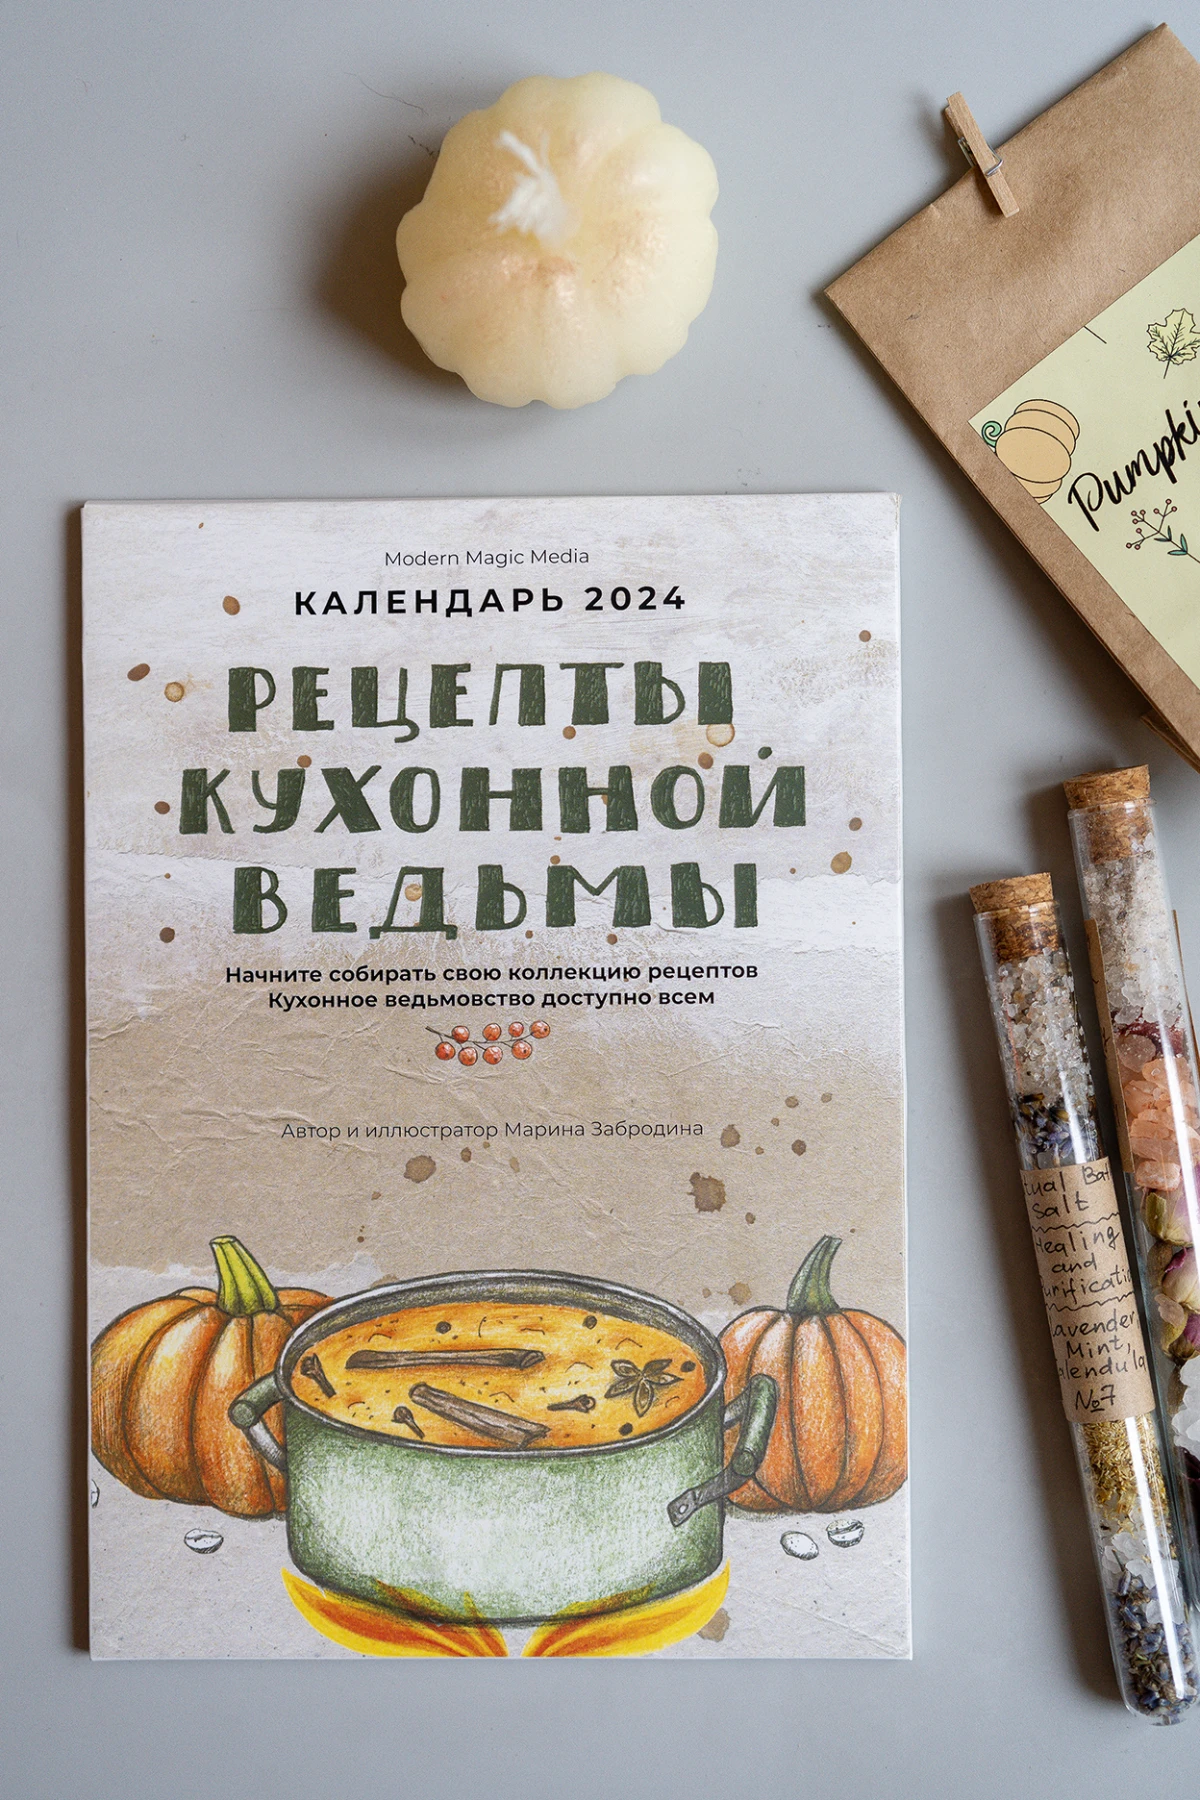 Календарь 2024 "Рецепты кухонной ведьмы"